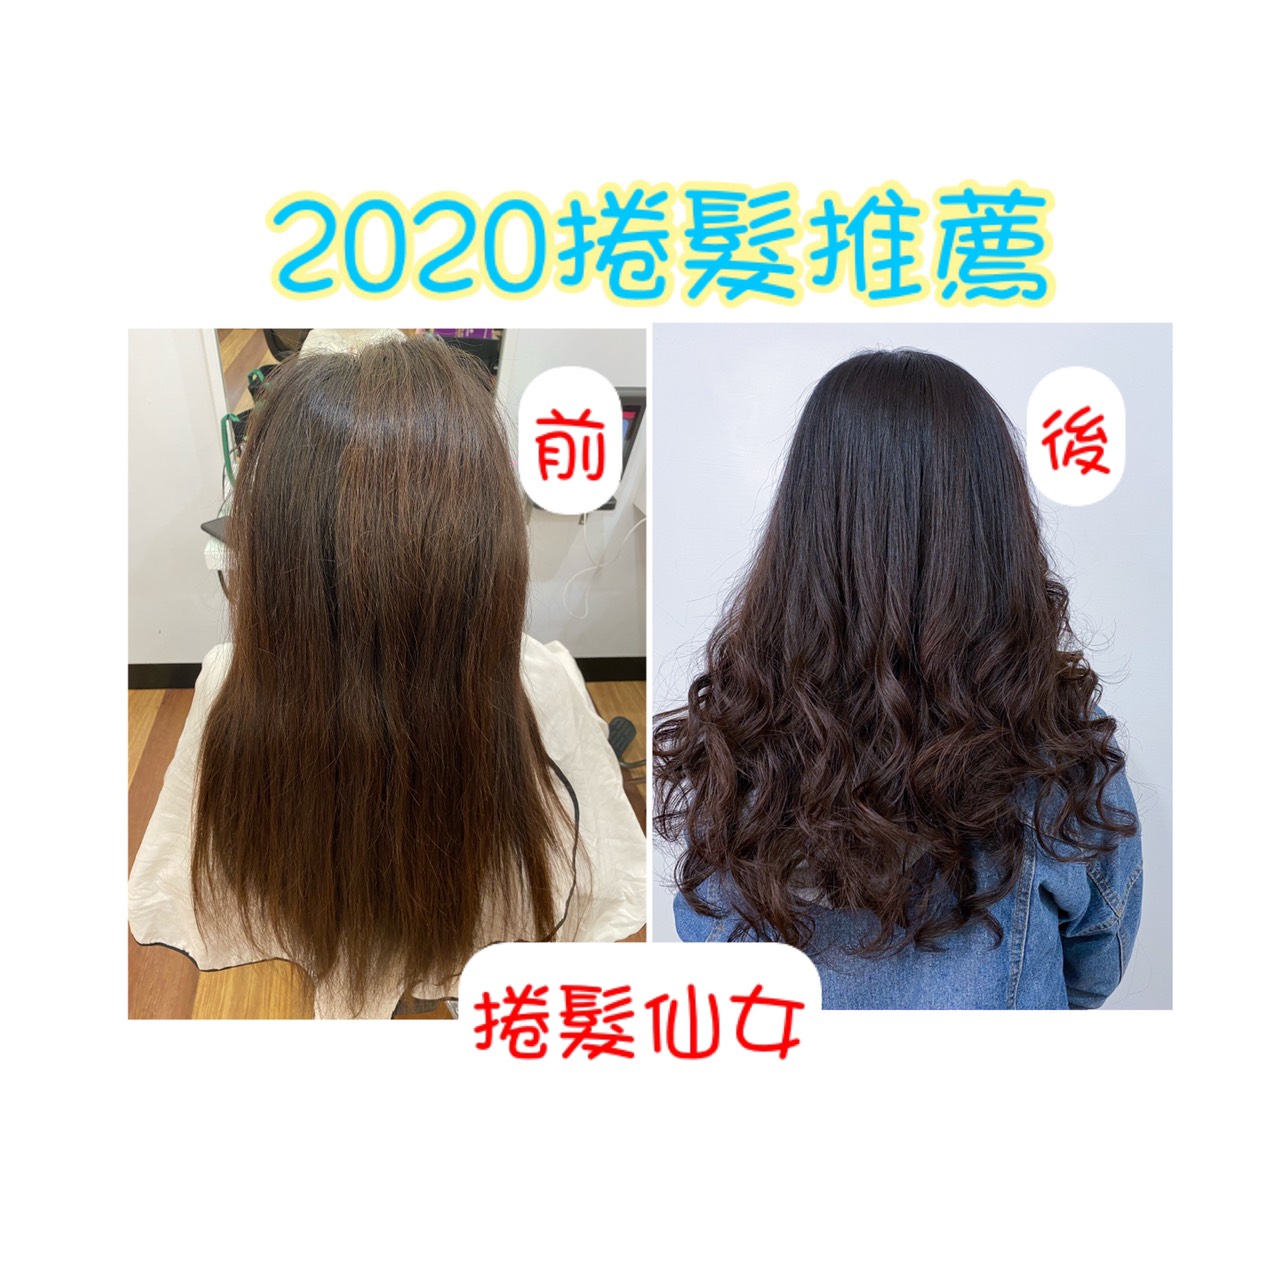 【高雄鳳山燙髮女皇推薦】2020年推薦捲髮就是這款，一定要選她 !?